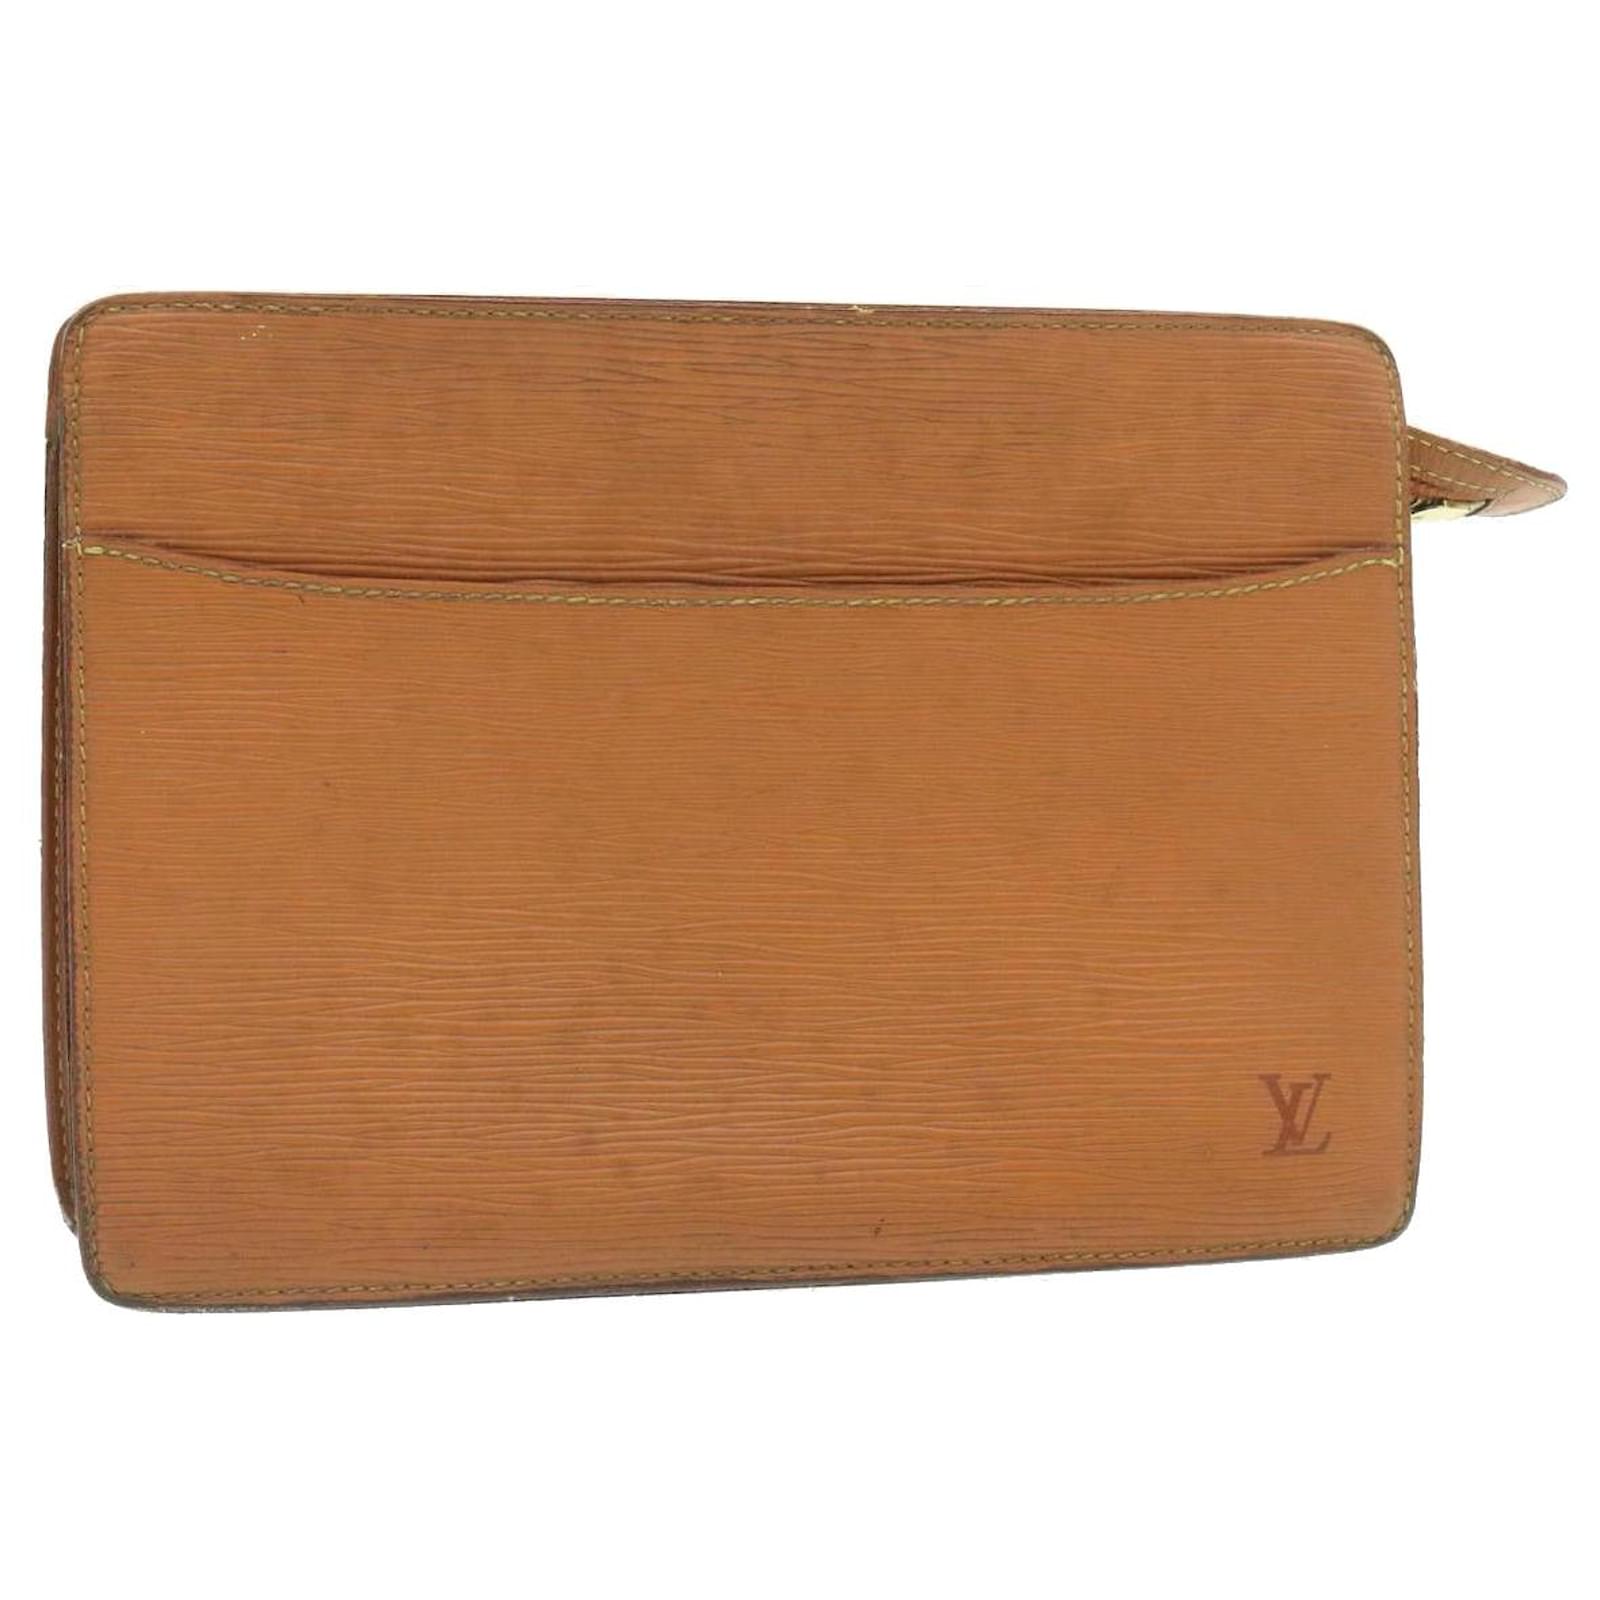 Louis-Vuitton Epi Pochette Homme Clutch Bag